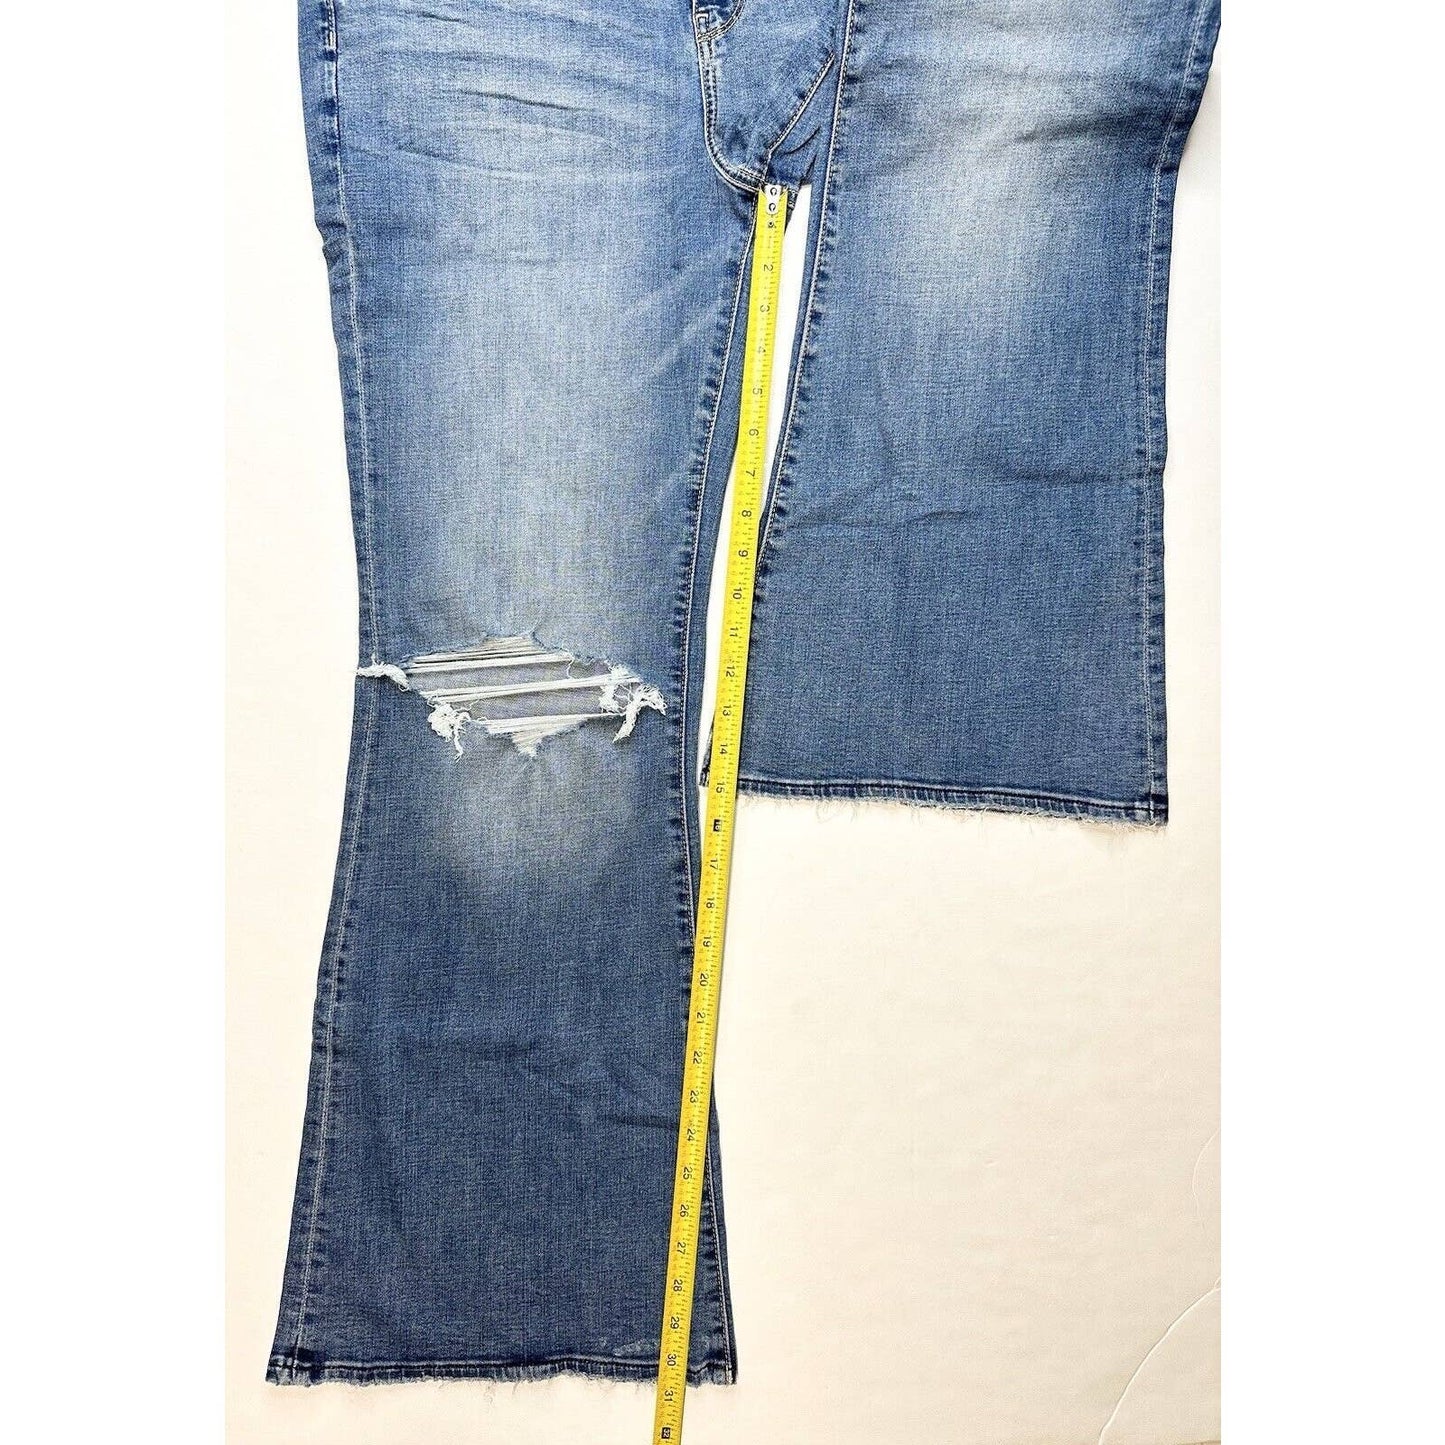 American Eagle Super Hi-Rise Flare Jeans 16 Stretch Blue Denim Distressed NEW